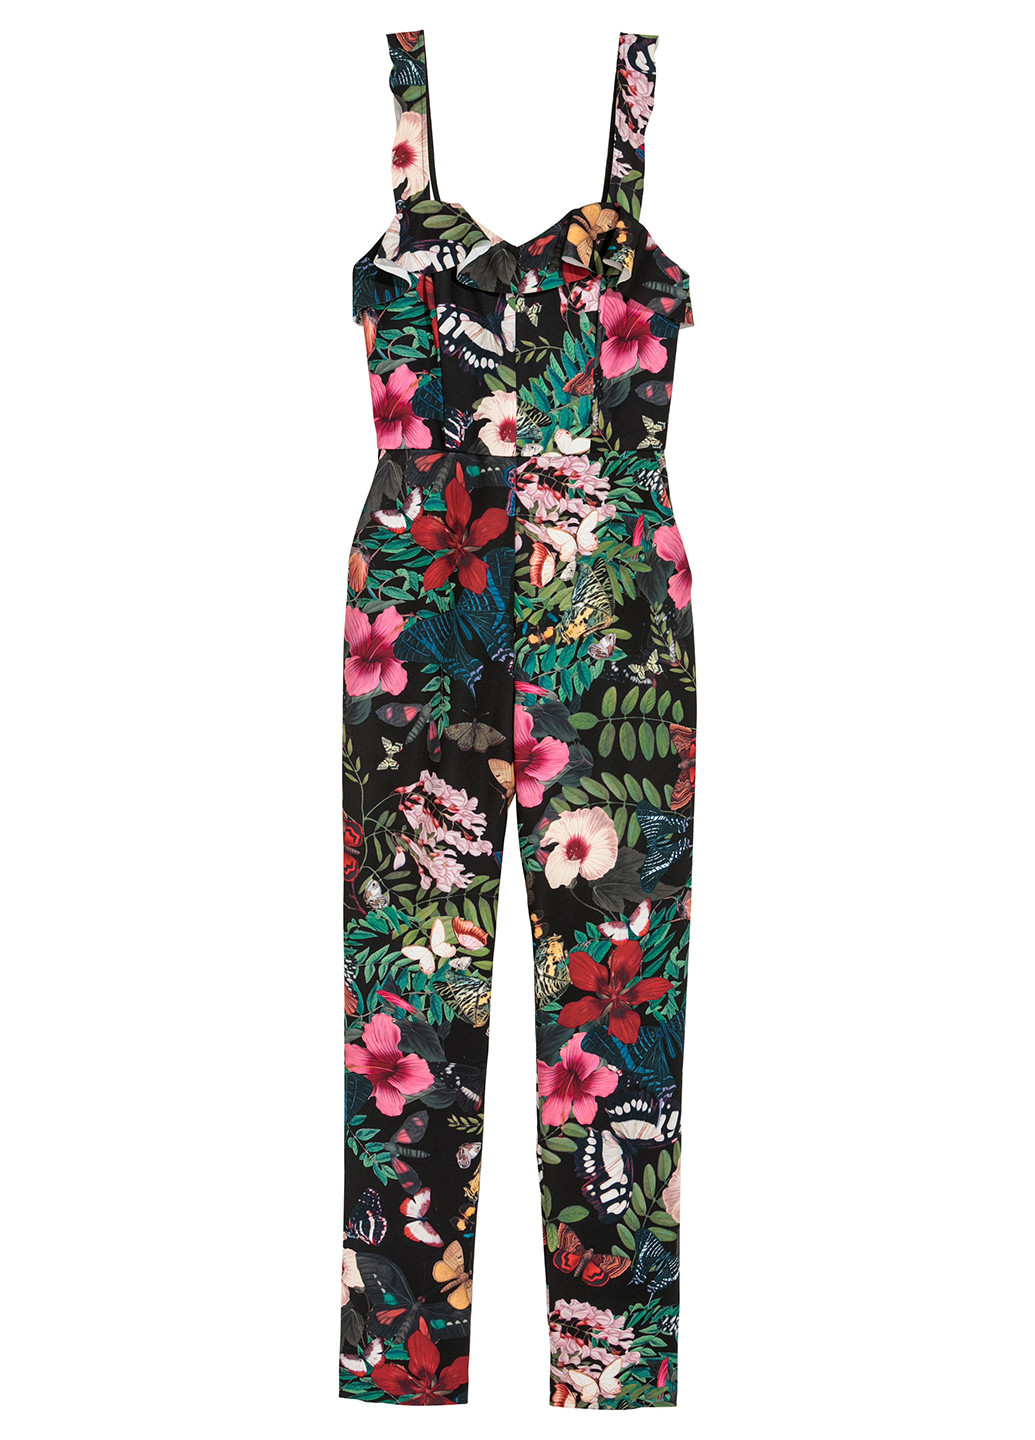 Комбинезон H&M комбинезон-брюки цветочный чёрный кэжуал полиэстер